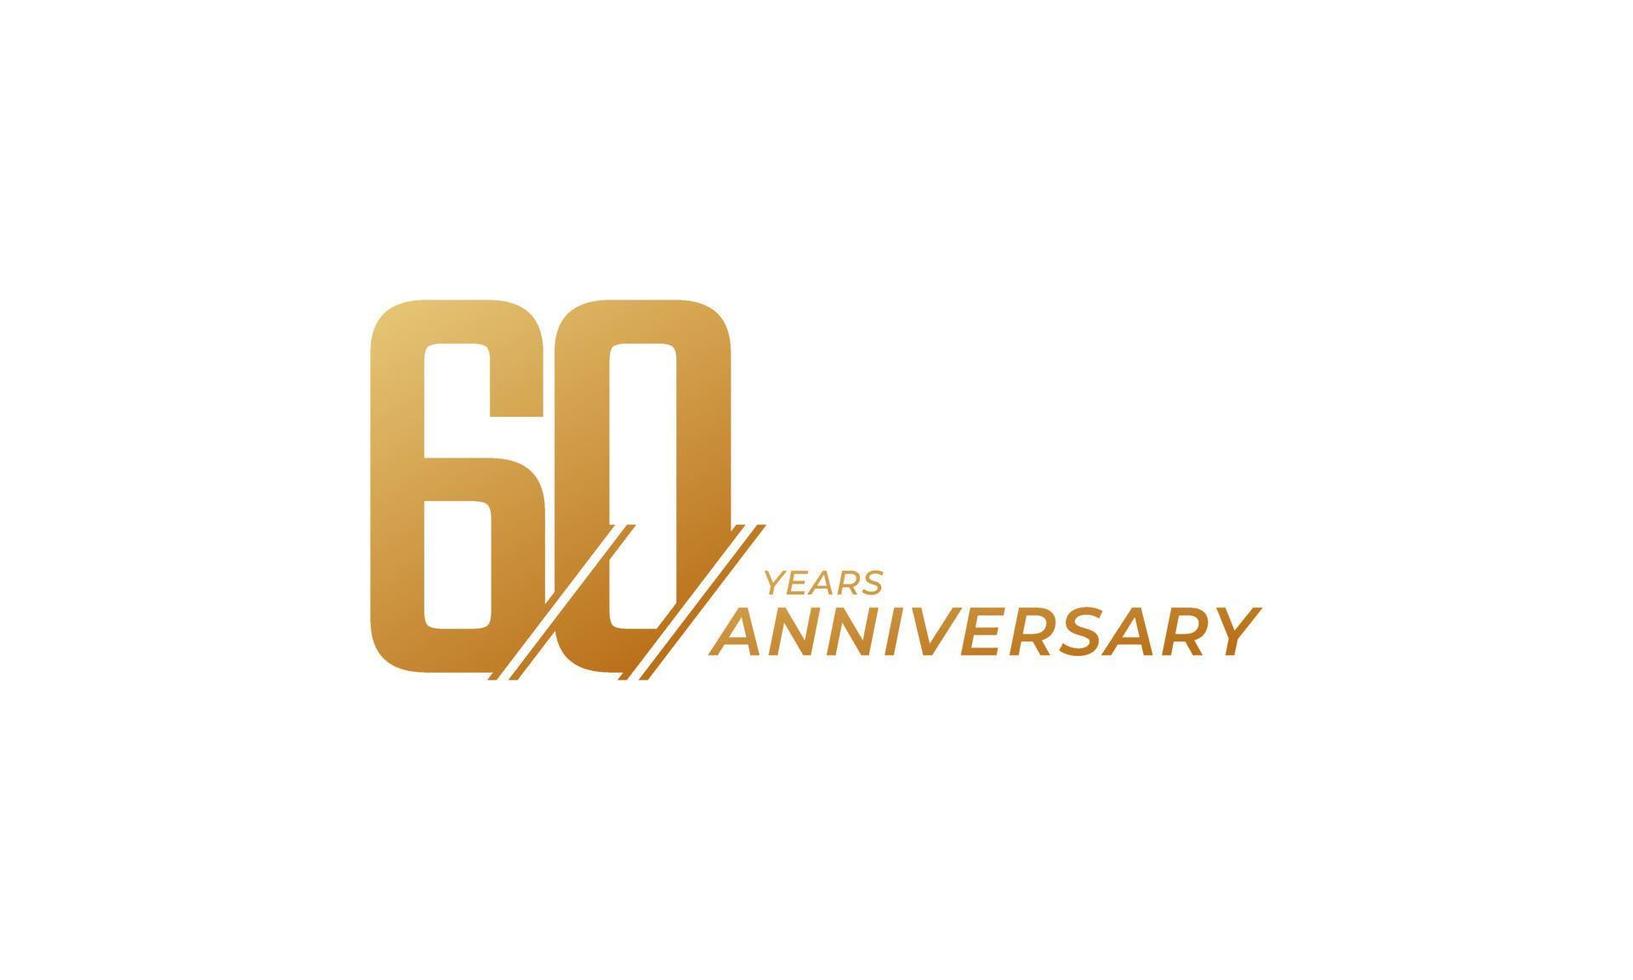 Vettore di celebrazione di 60 anni di anniversario. il saluto di buon anniversario celebra l'illustrazione di progettazione del modello